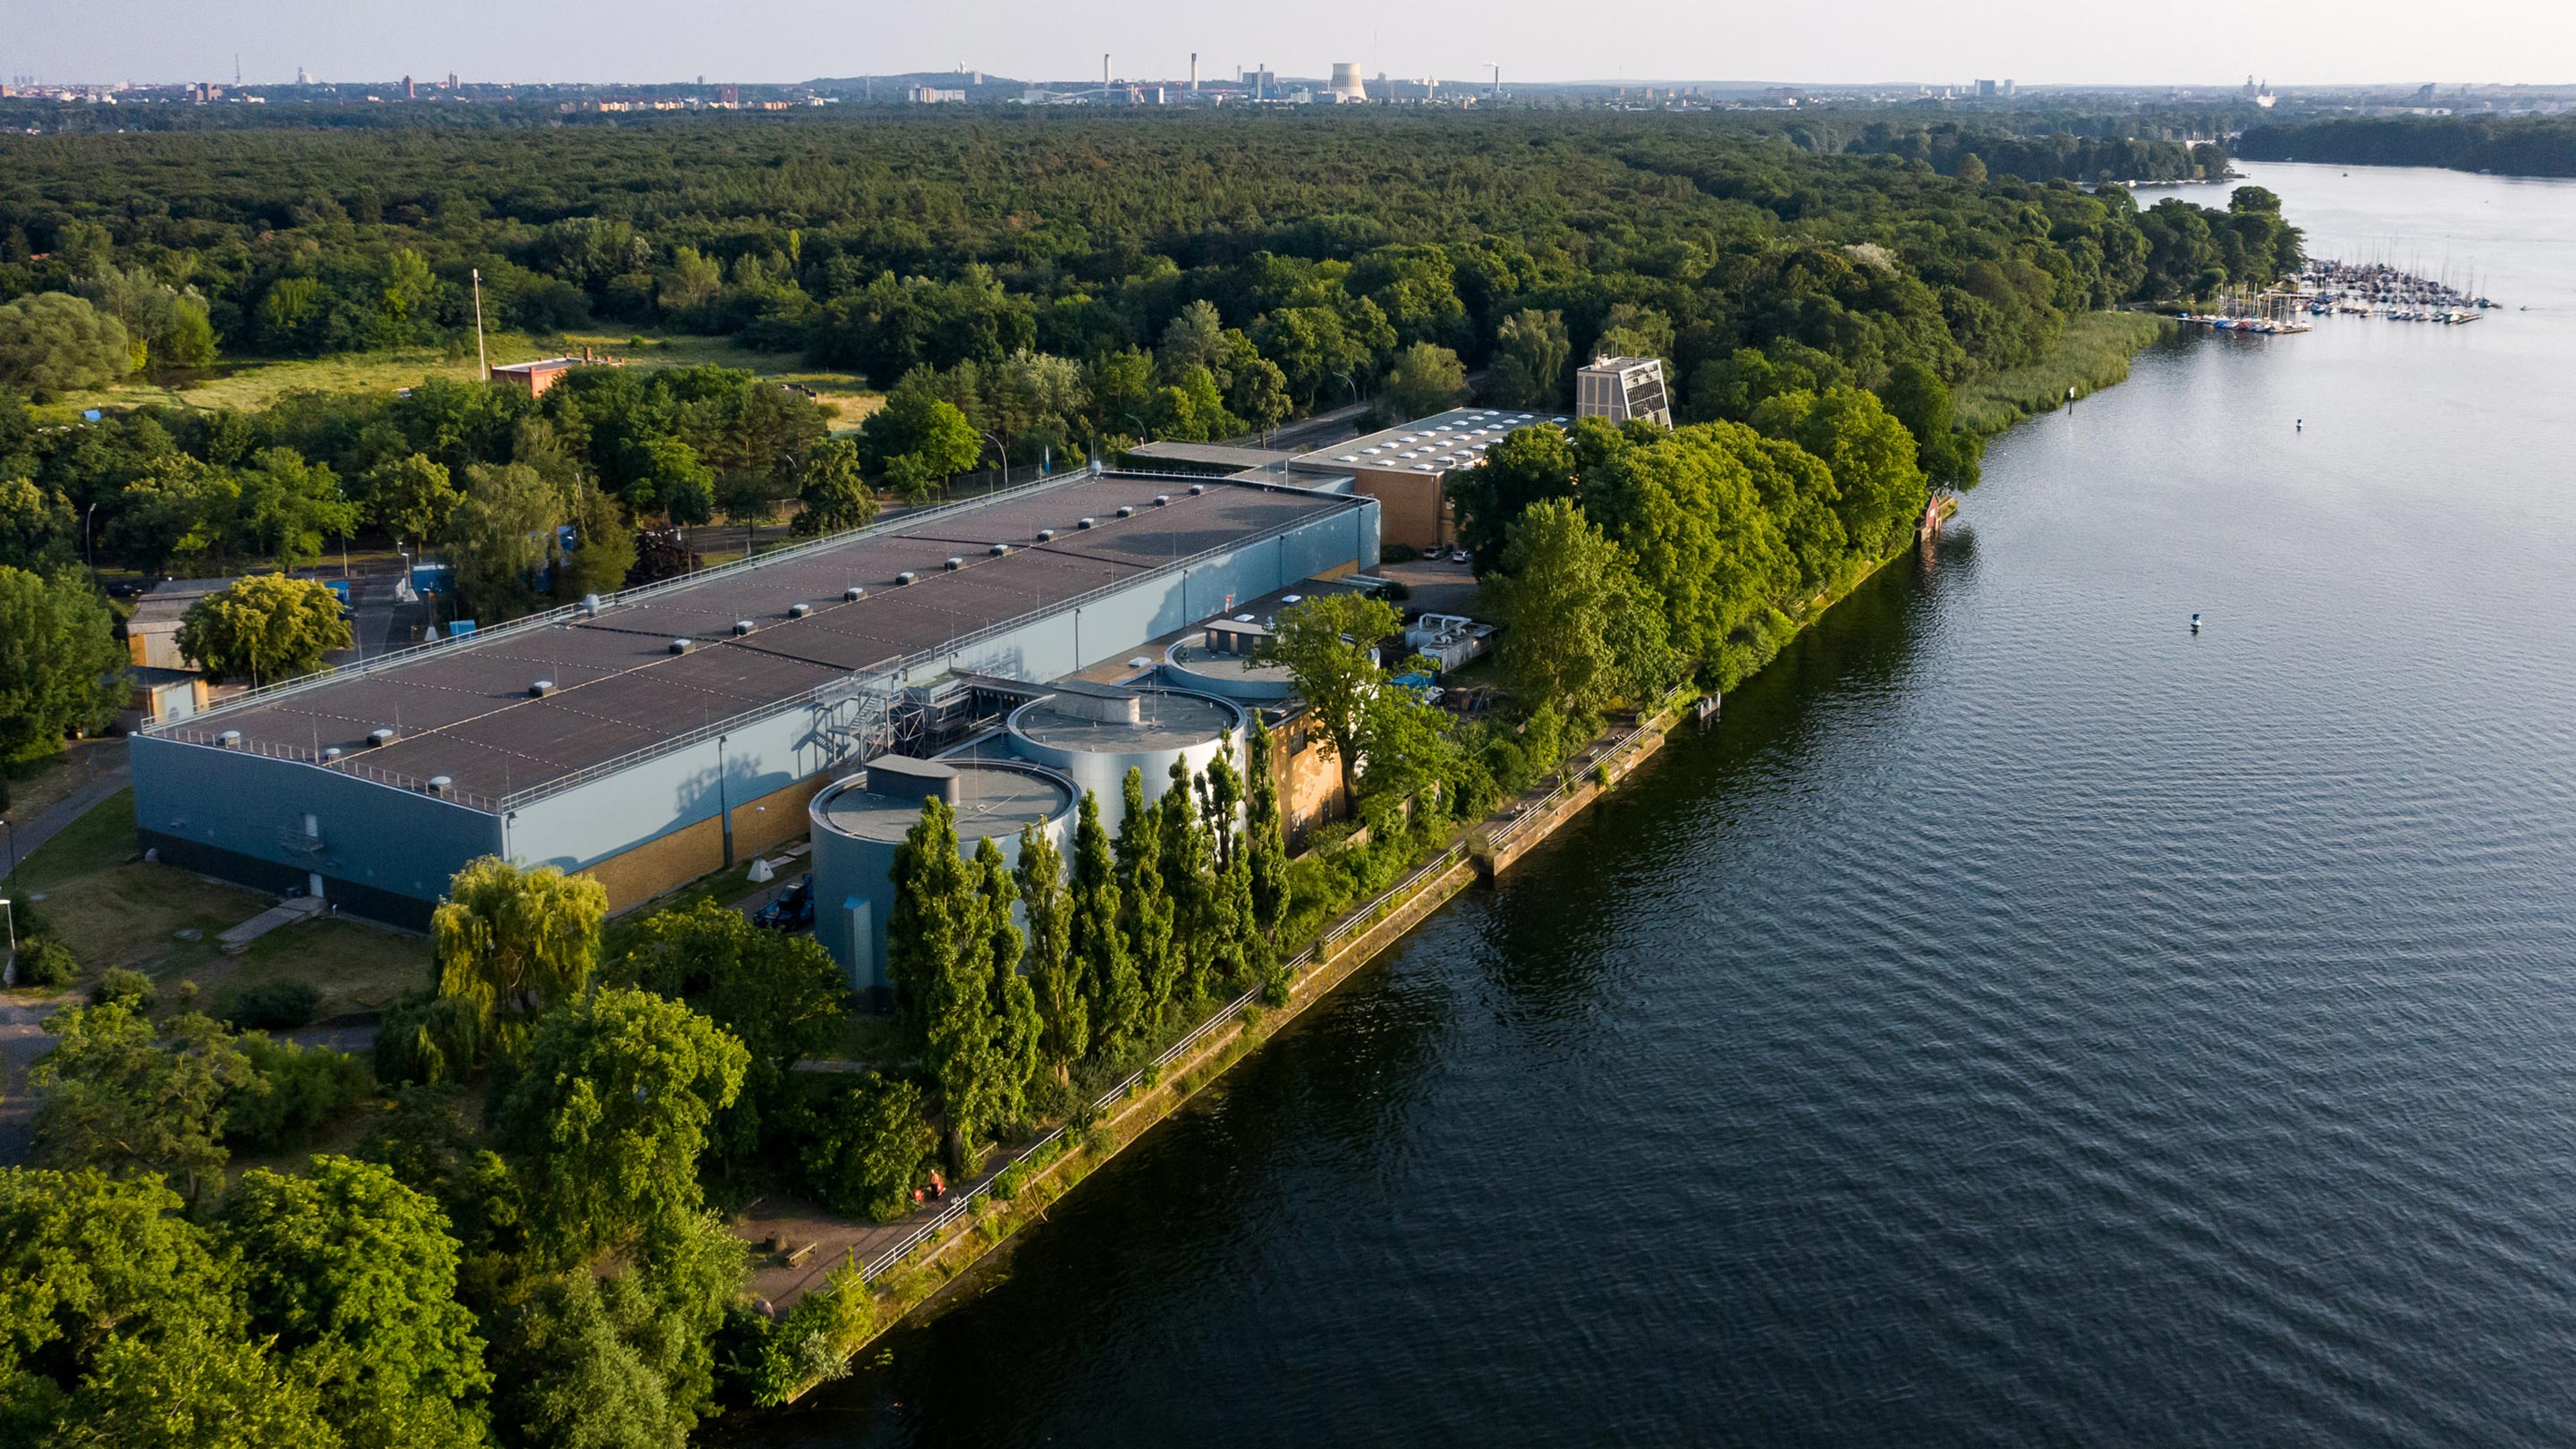 Luftbild von einem Fabrikgebäude mit großen Tanks, das an einem Gewässer steht